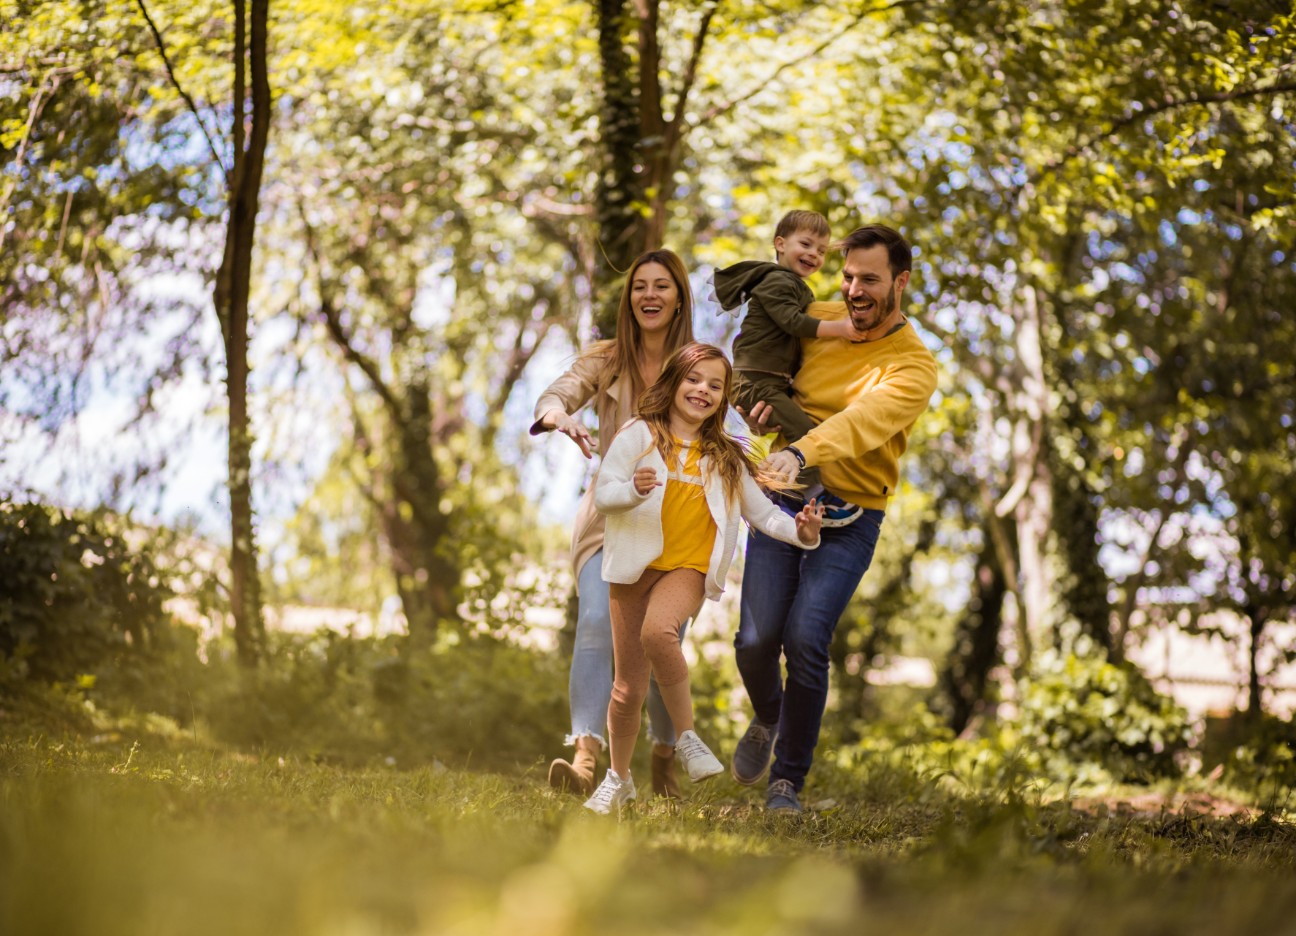 Ein Mann mit einem kleinen Jungen auf dem Arm, eine Frau und ein Mädchen spazieren fröhlich durch den Wald.